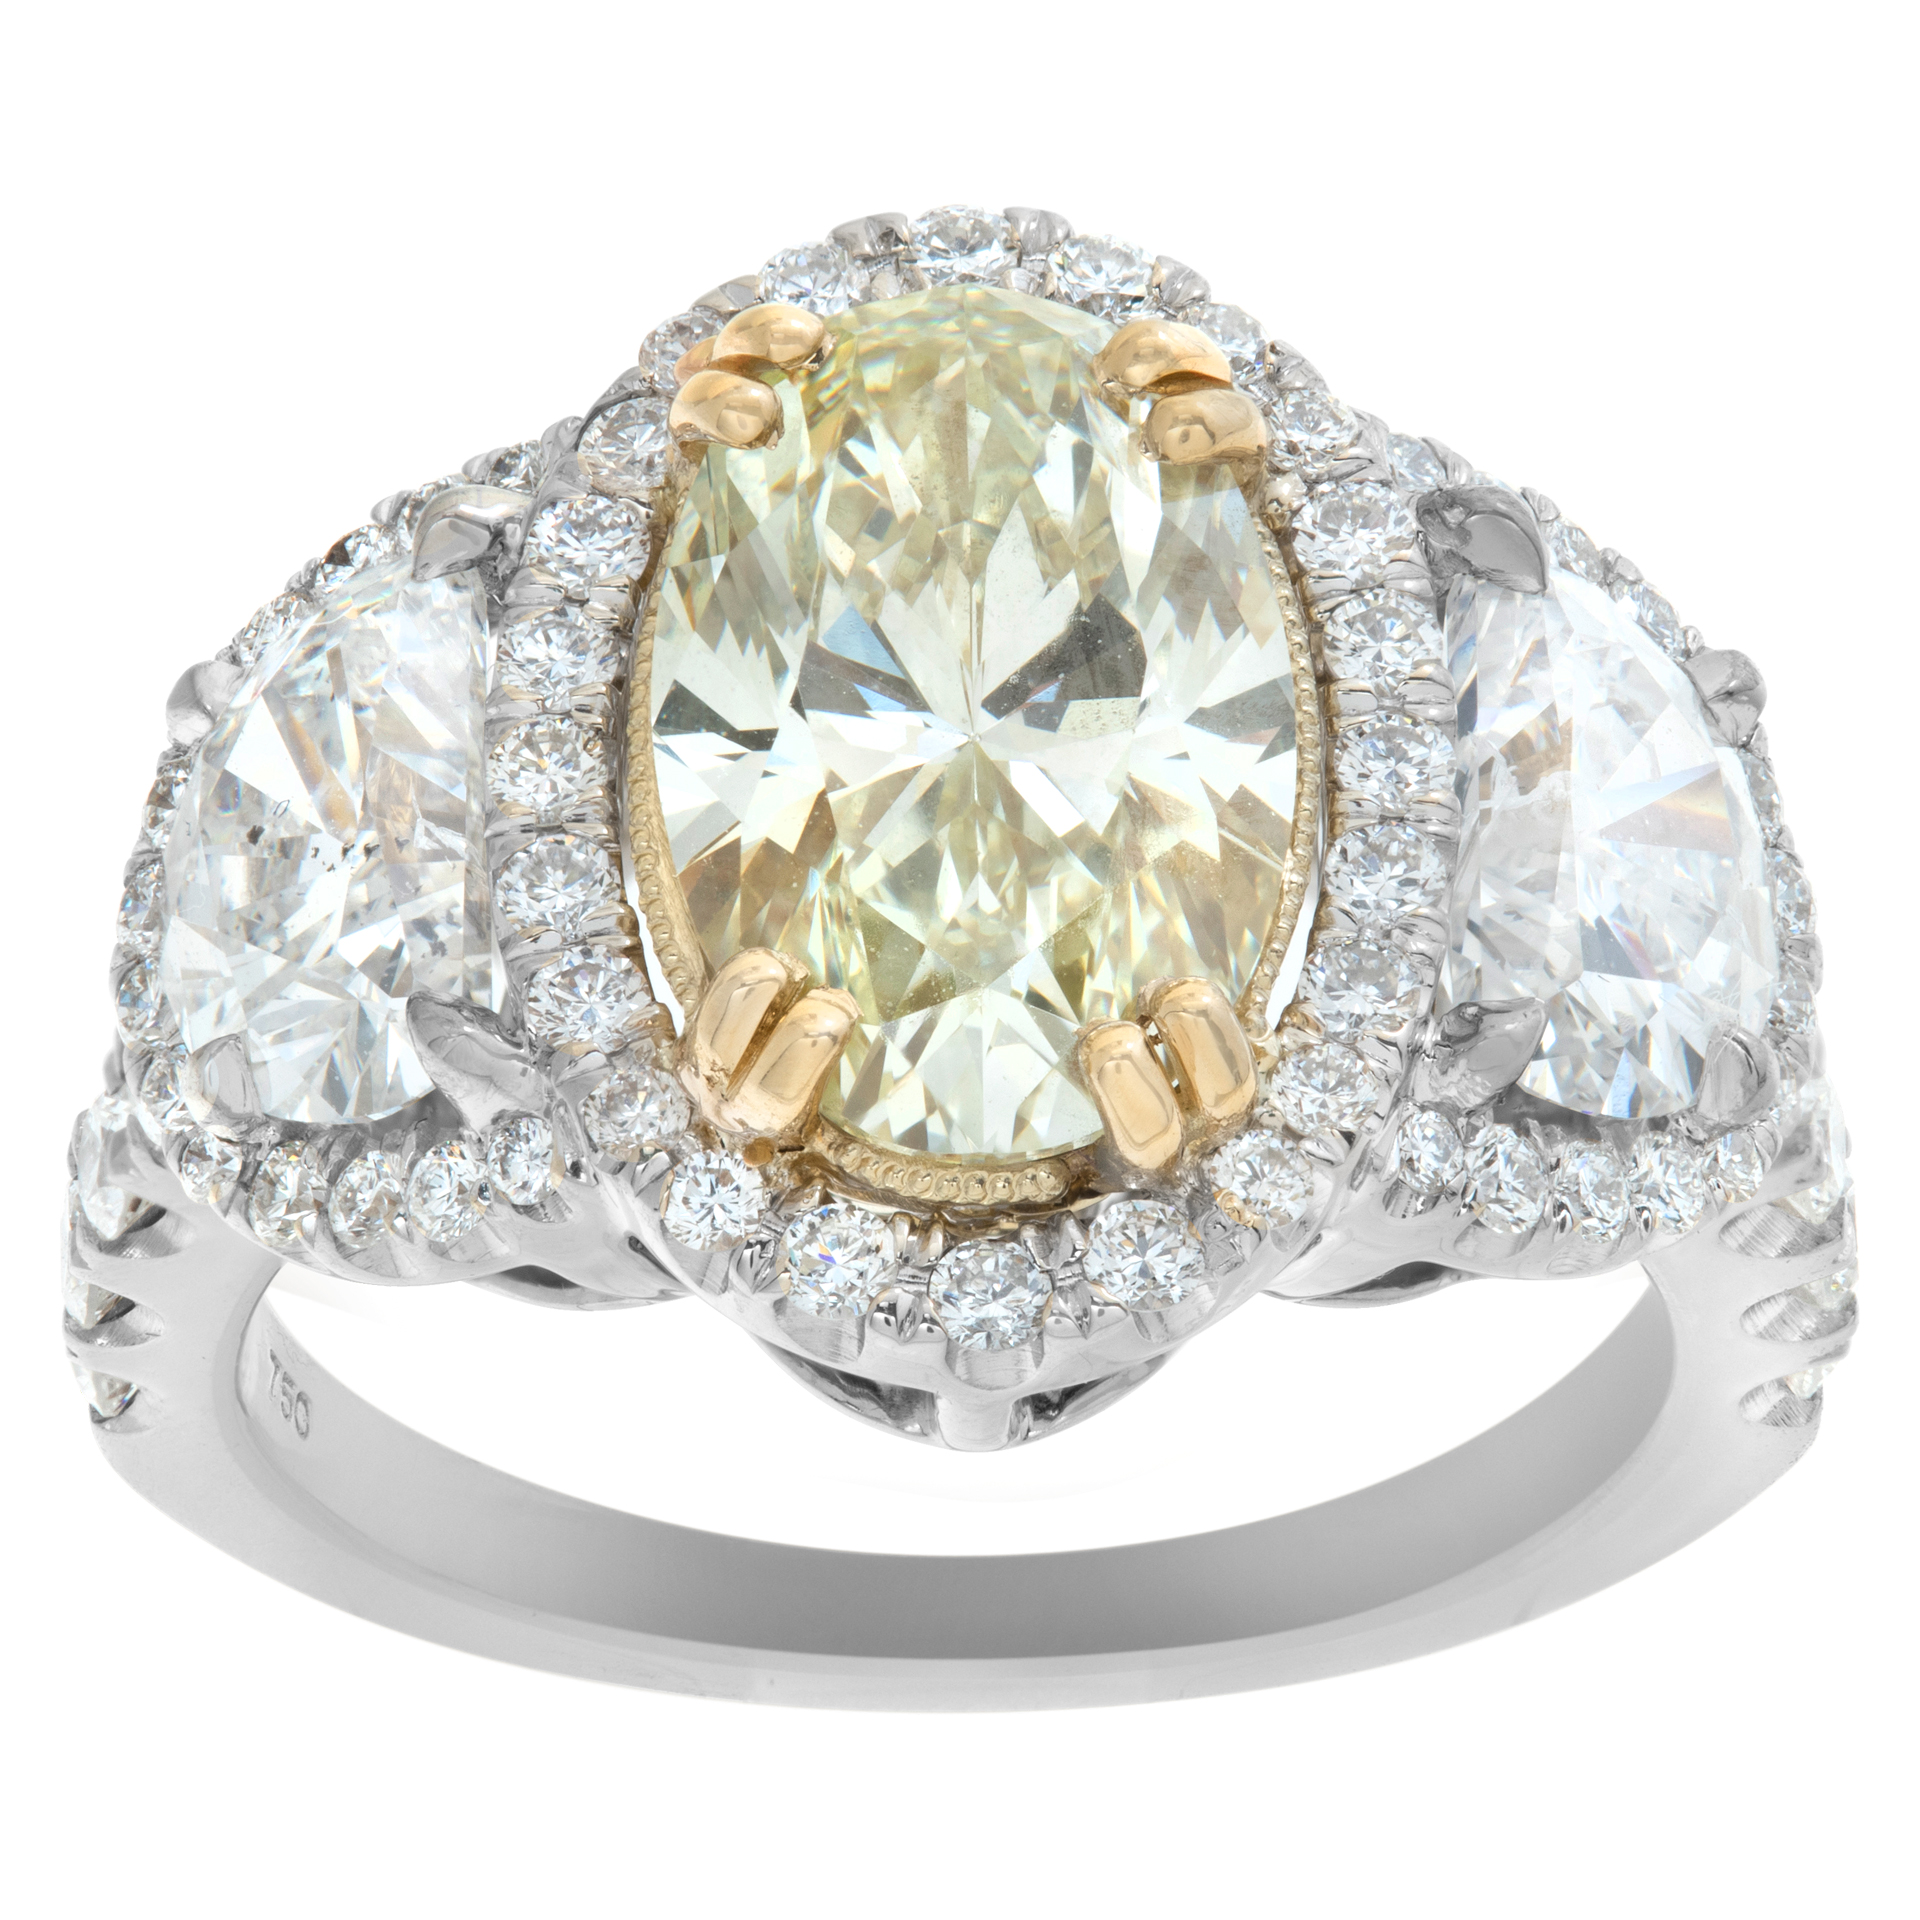 Gia Certfied Oval Brilliant Cut Diamond 2.10 Carat (U-V Range, Vvs2 Clarity) Ring In 18k White Gold Setting image 1